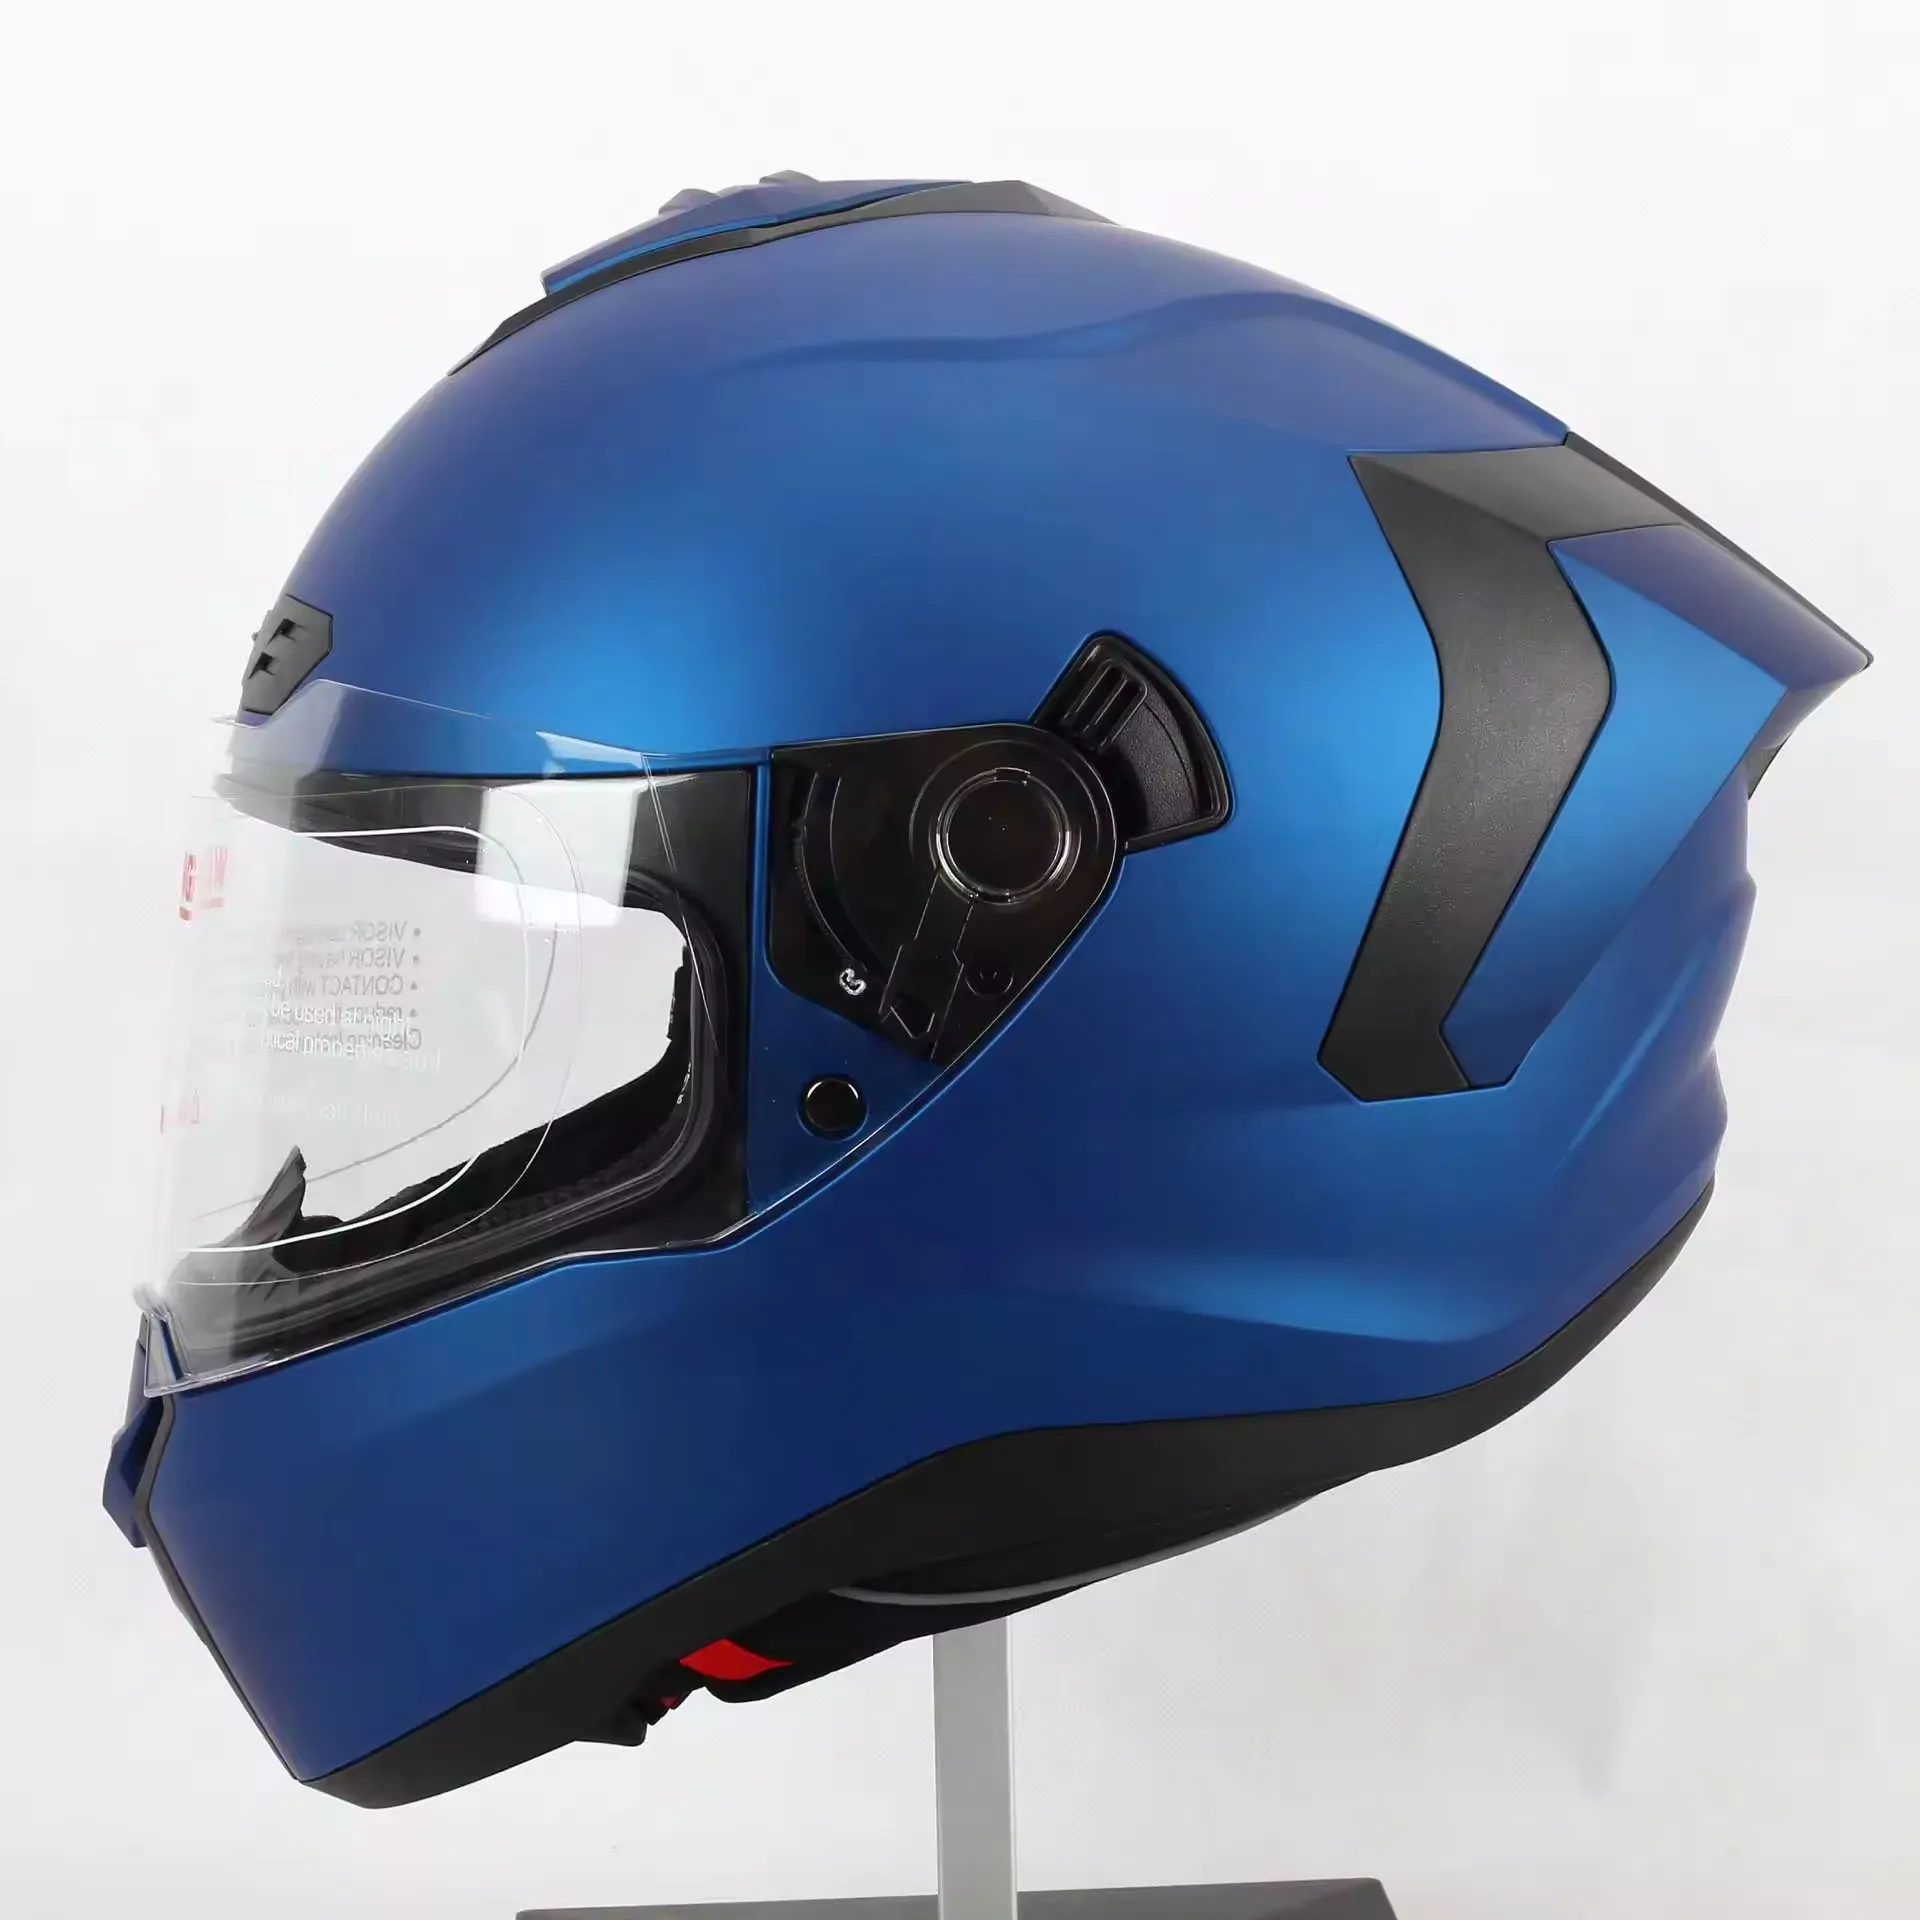 Мотоциклетный шлем для езды на мотоцикле с 2206 сертификатом